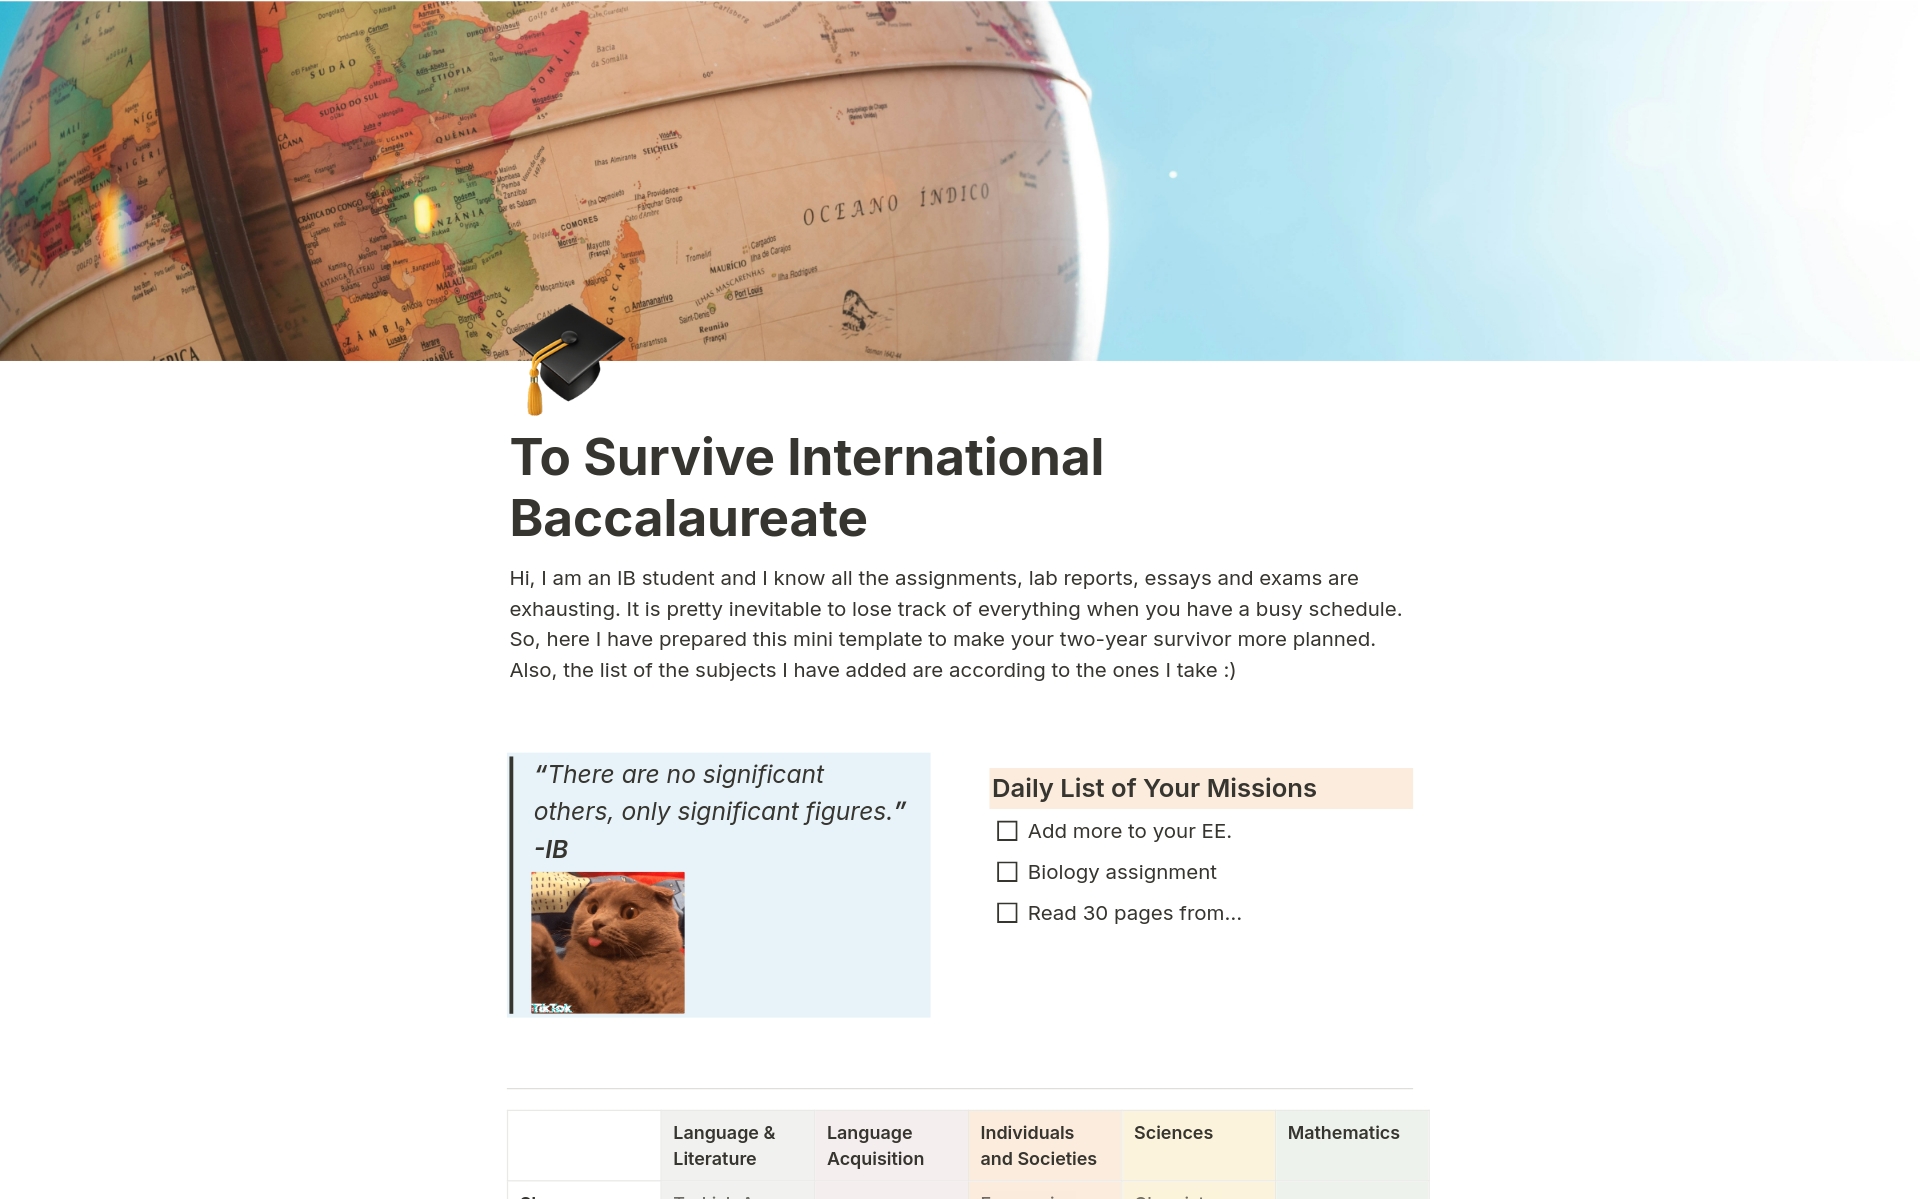 Uma prévia do modelo para To Survive International Baccalaureate